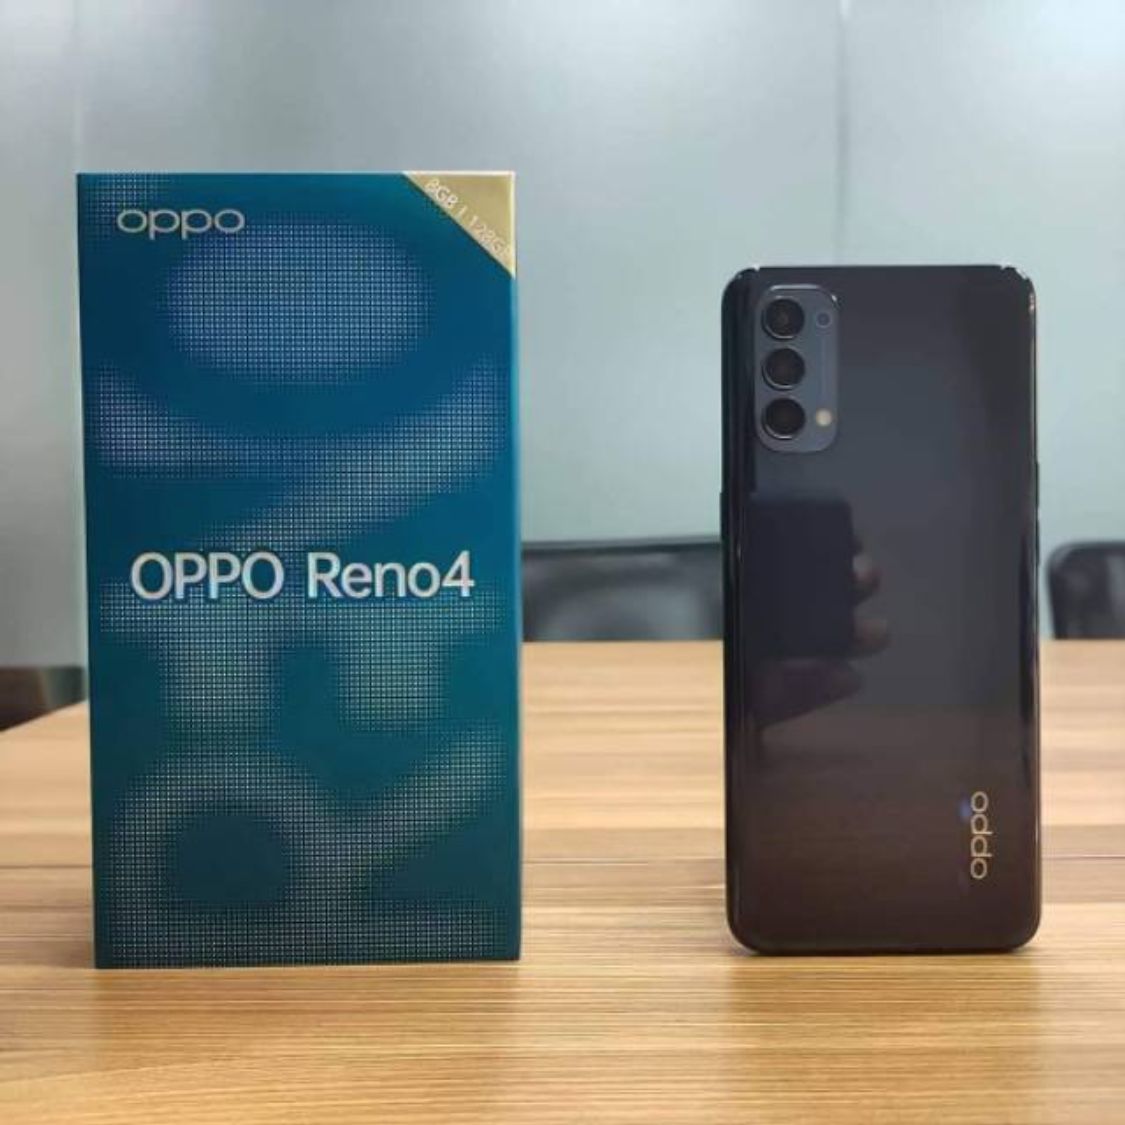 Daftar Harga HP OPPO 24 September 2020: Oppo Reno 4, Find